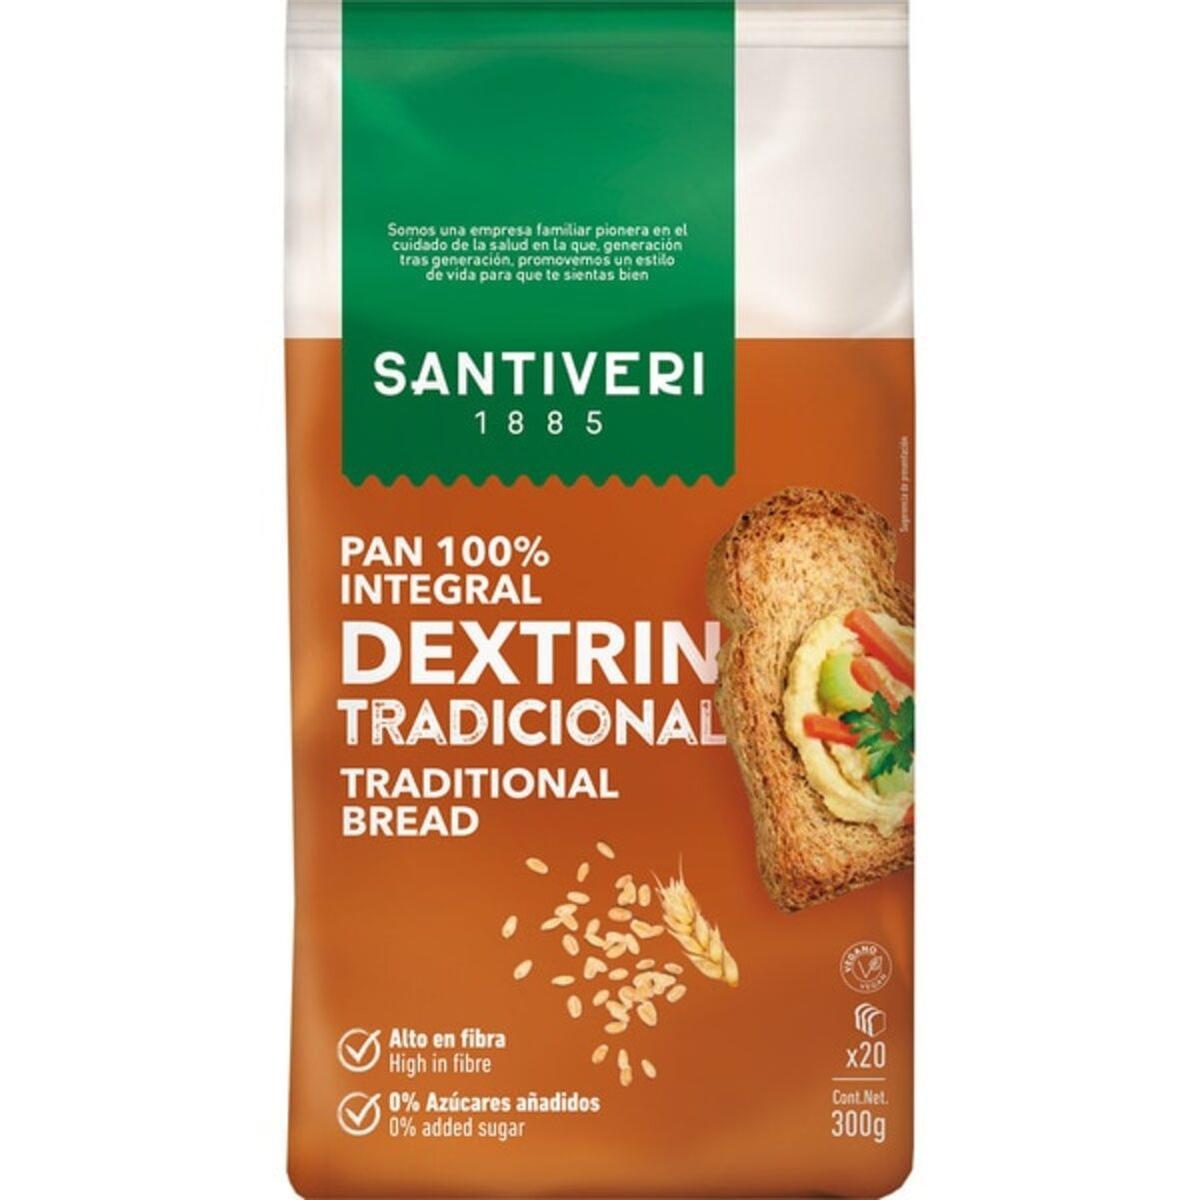 Pan 100% integral Dextrin Tradicional de la marca Santiver.